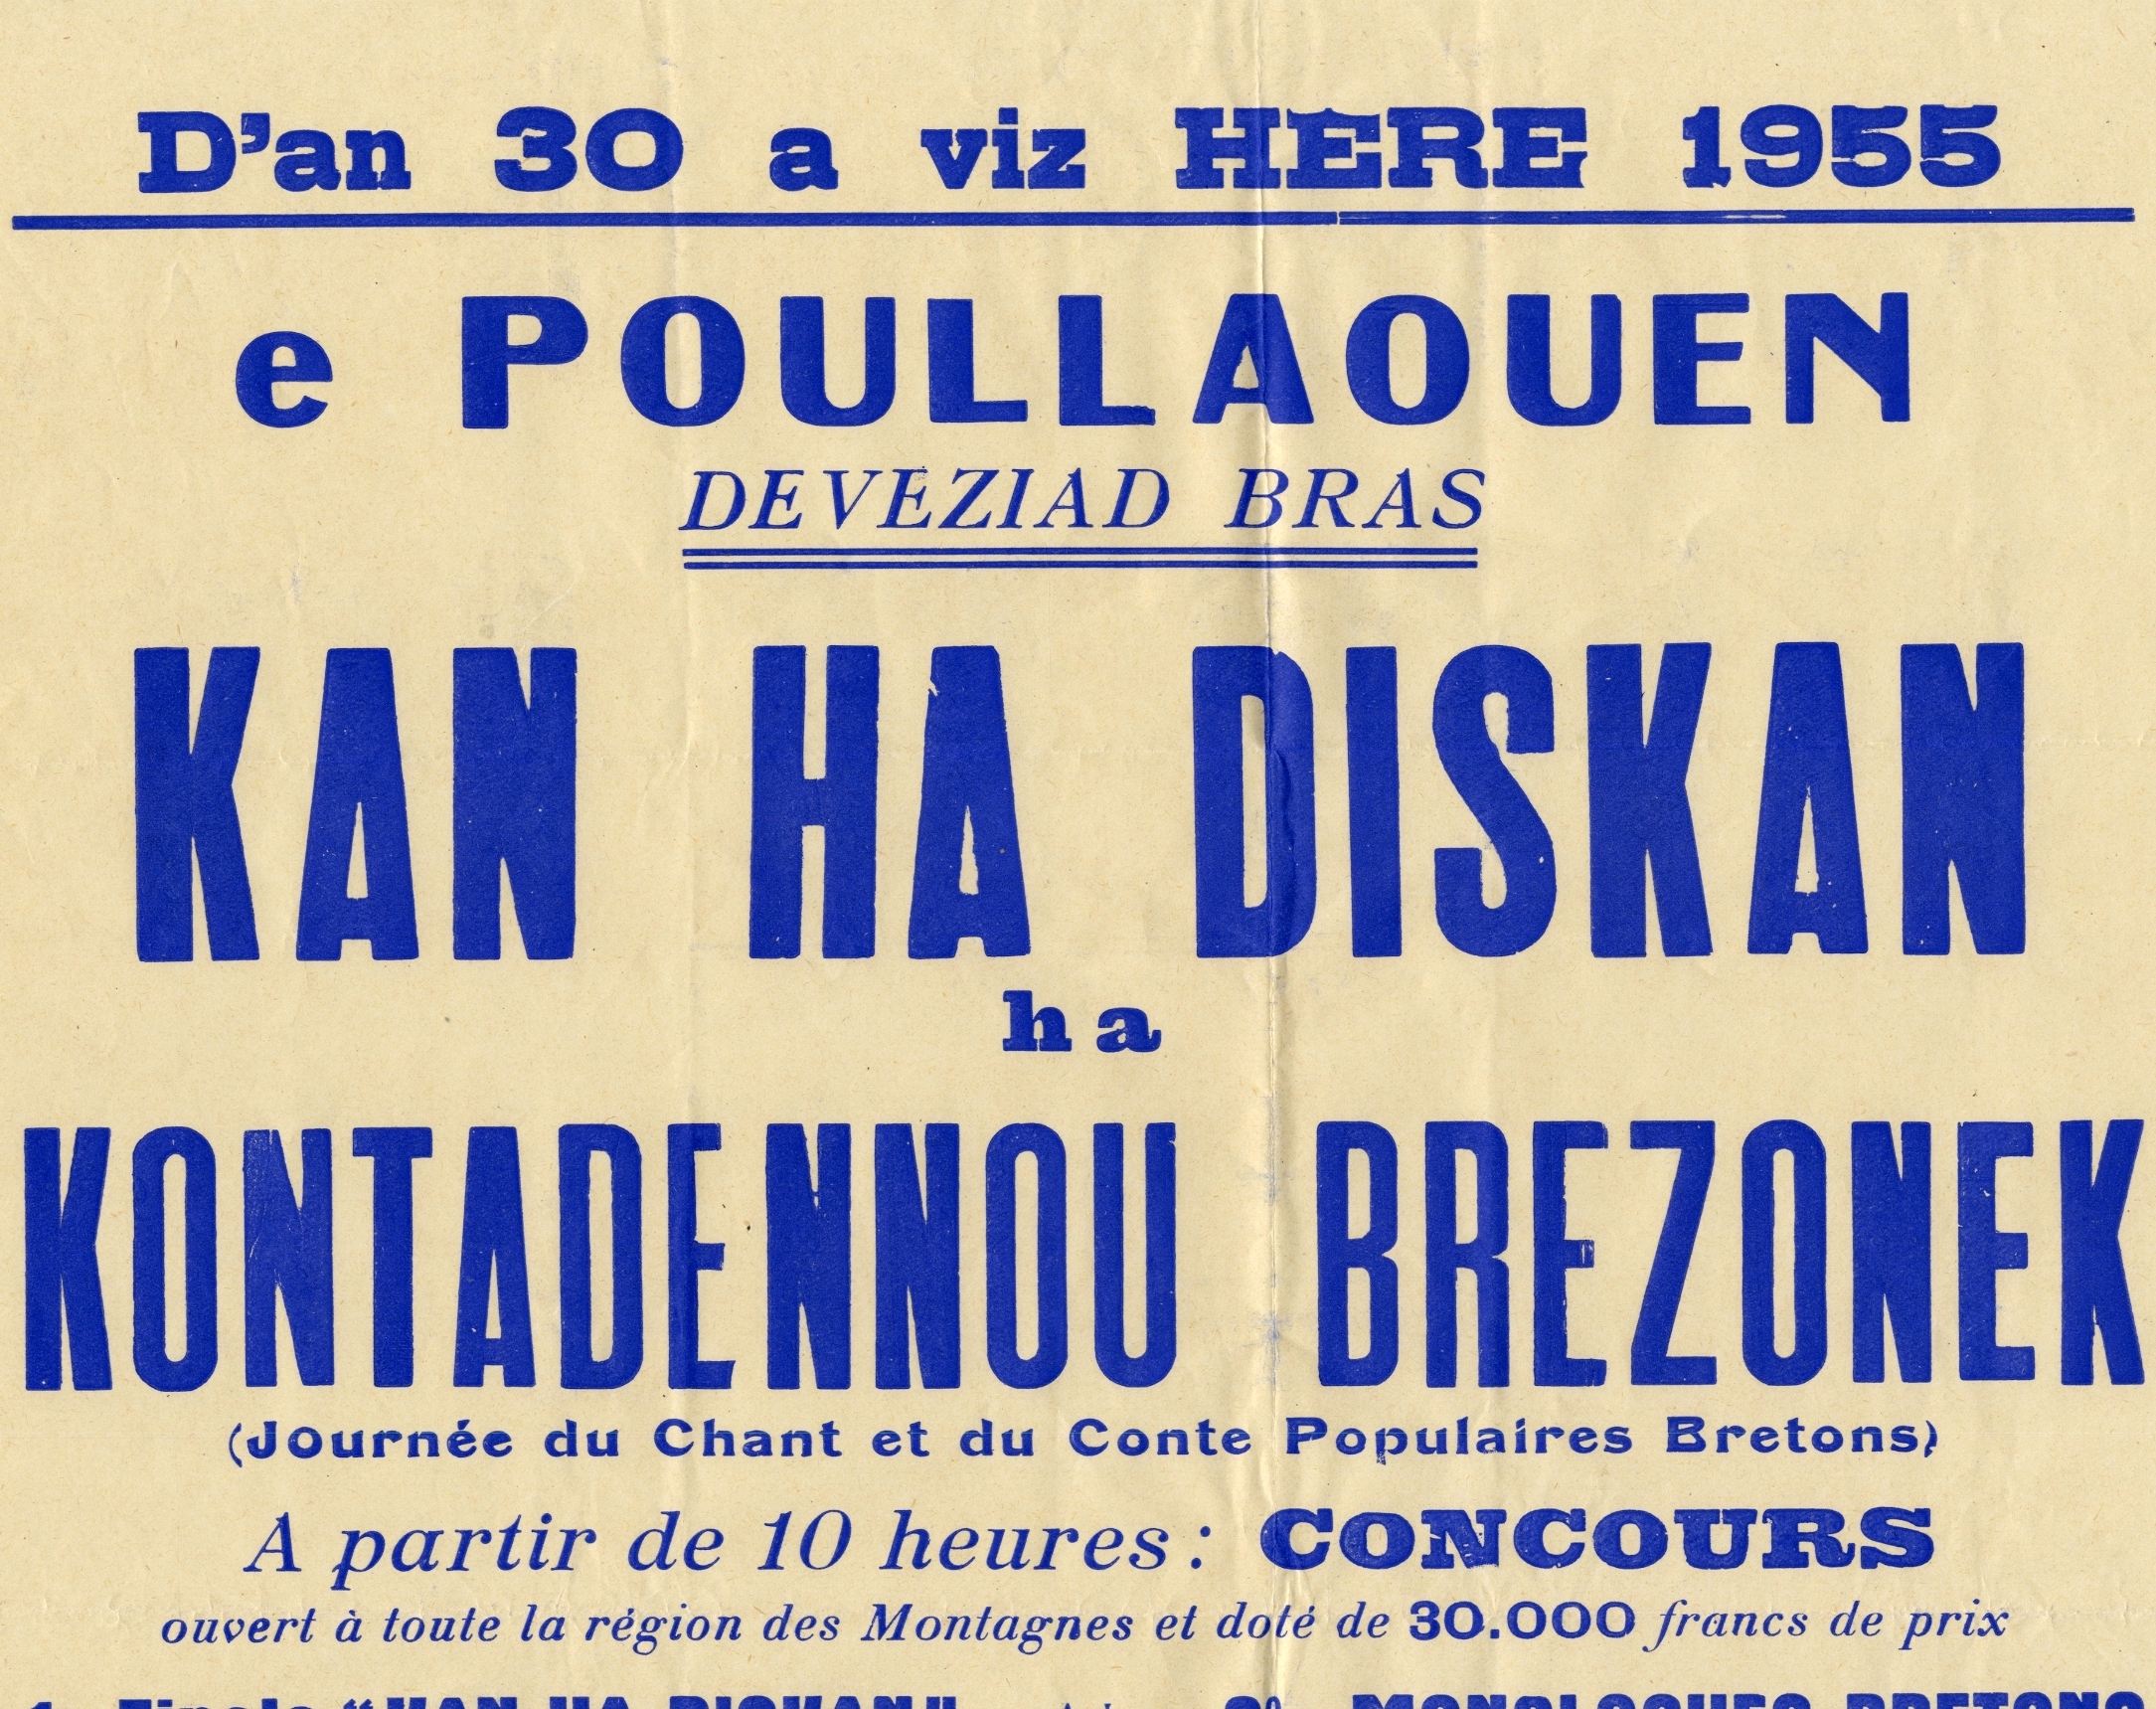 Haut de l'affiche du concours de chant à Poullaouen (Finistère) en 1955